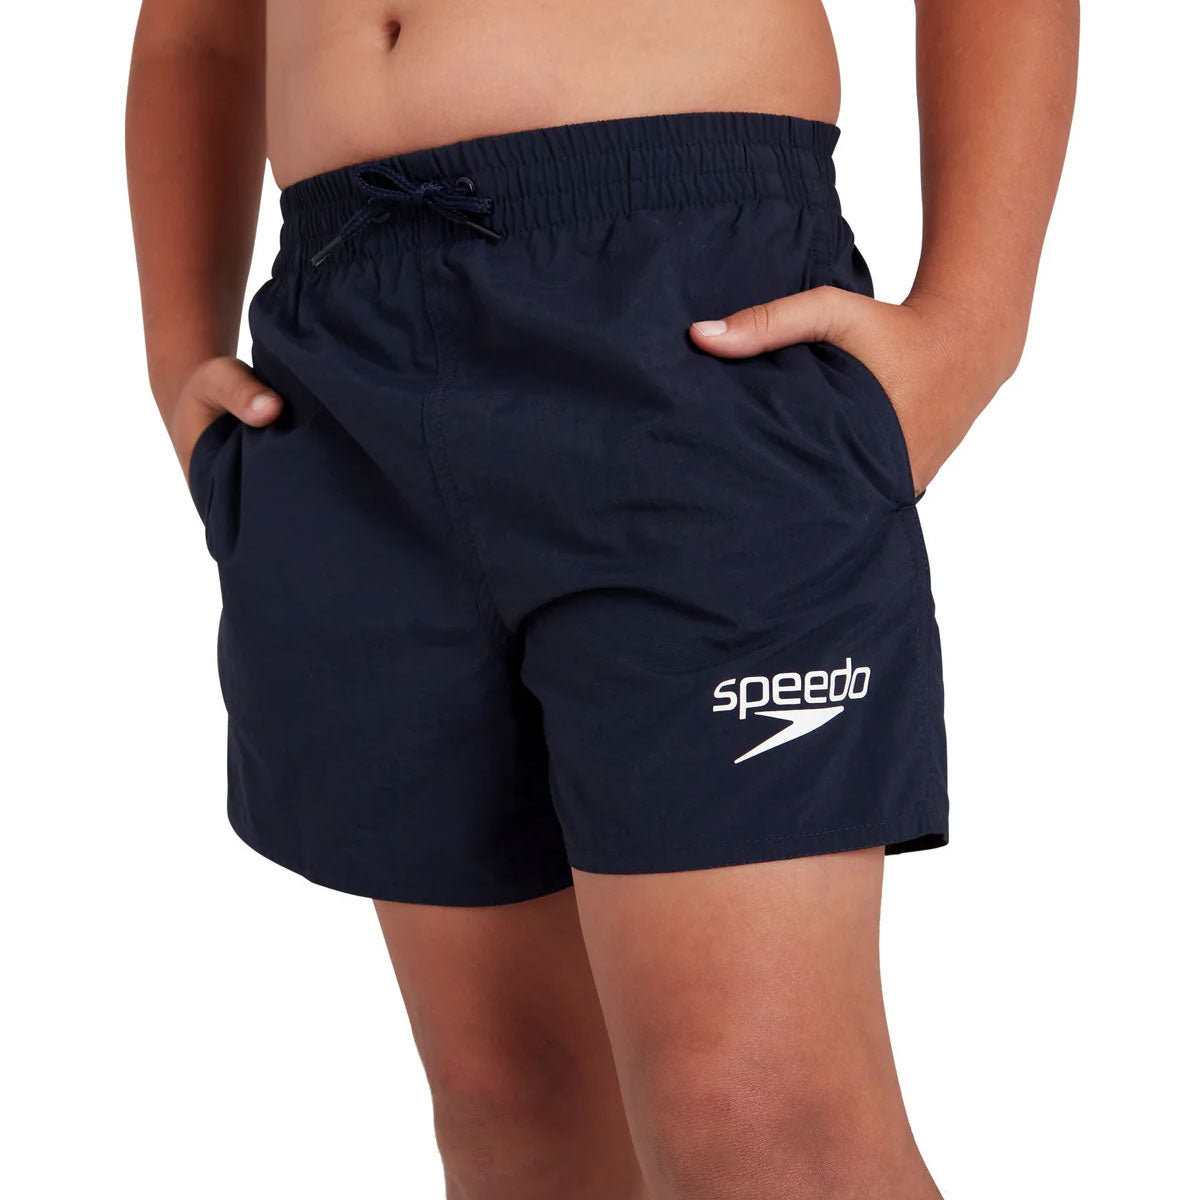 Speedo Essential 13 inch Leisure Watershort Swim Shorts - Boys - Navy